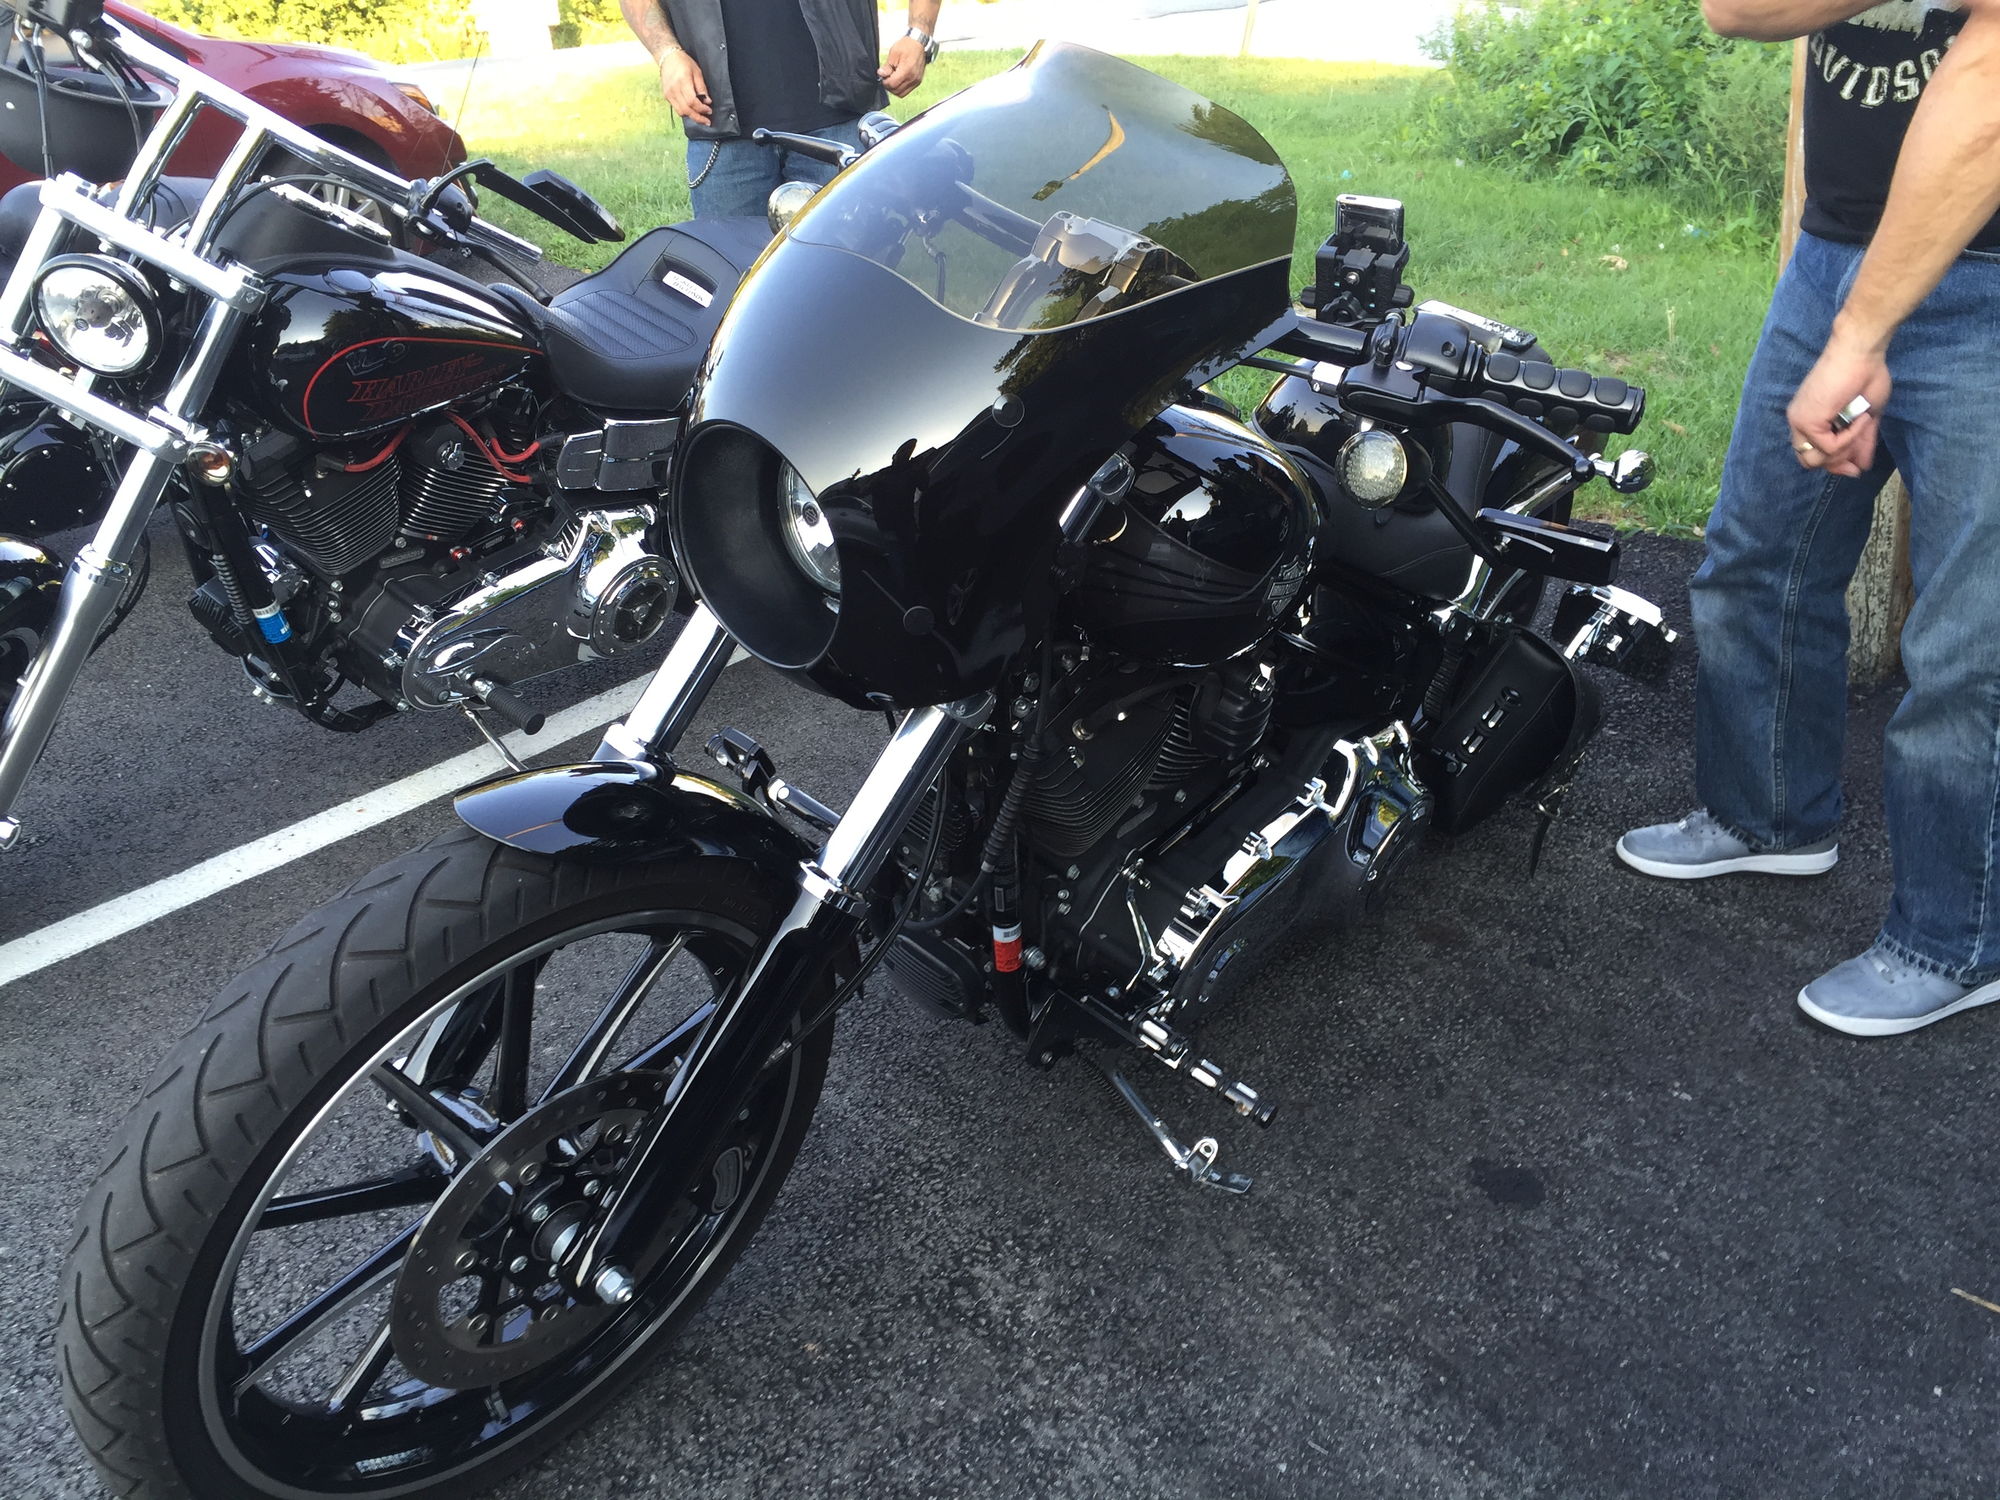 2015 Harley Breakout Harley Motorcycle Art Beautiful Bike